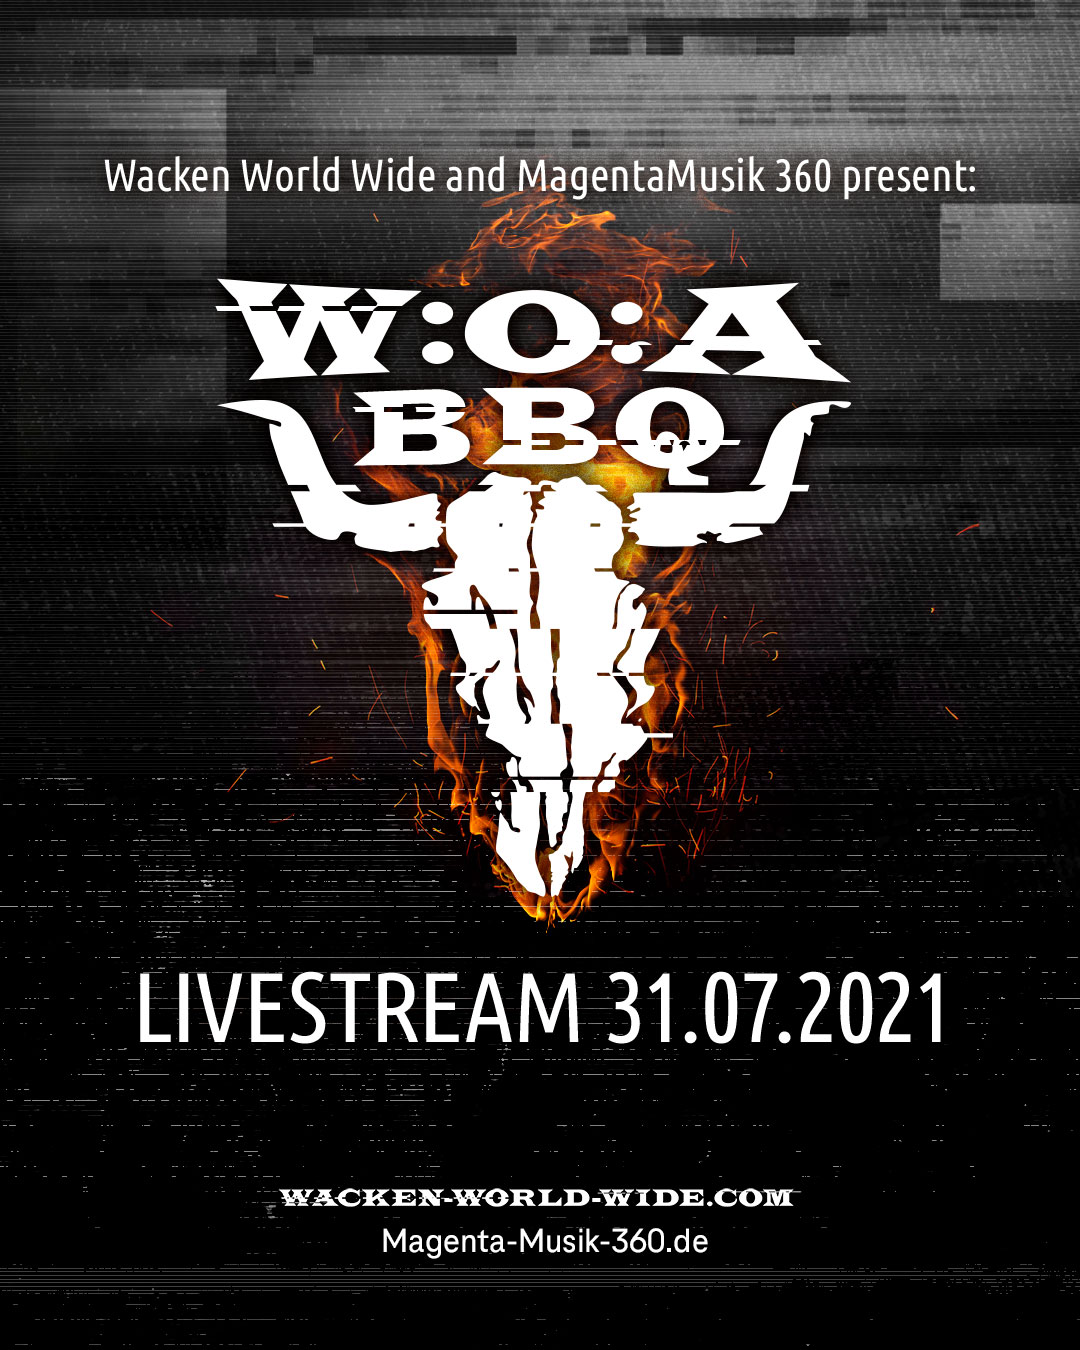 Wacken World Wide und MagentaMusik 360 präsentieren W:O:A BBQ